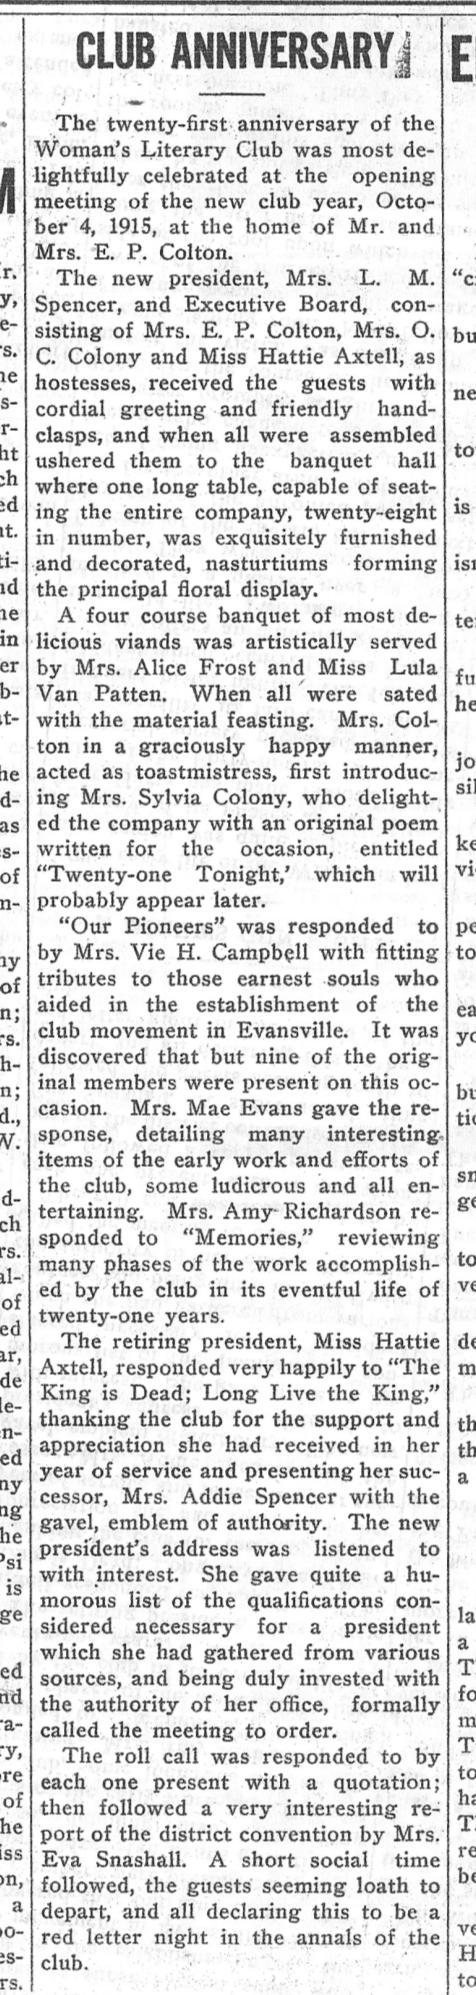 October 7, 1915, Evansville Review,